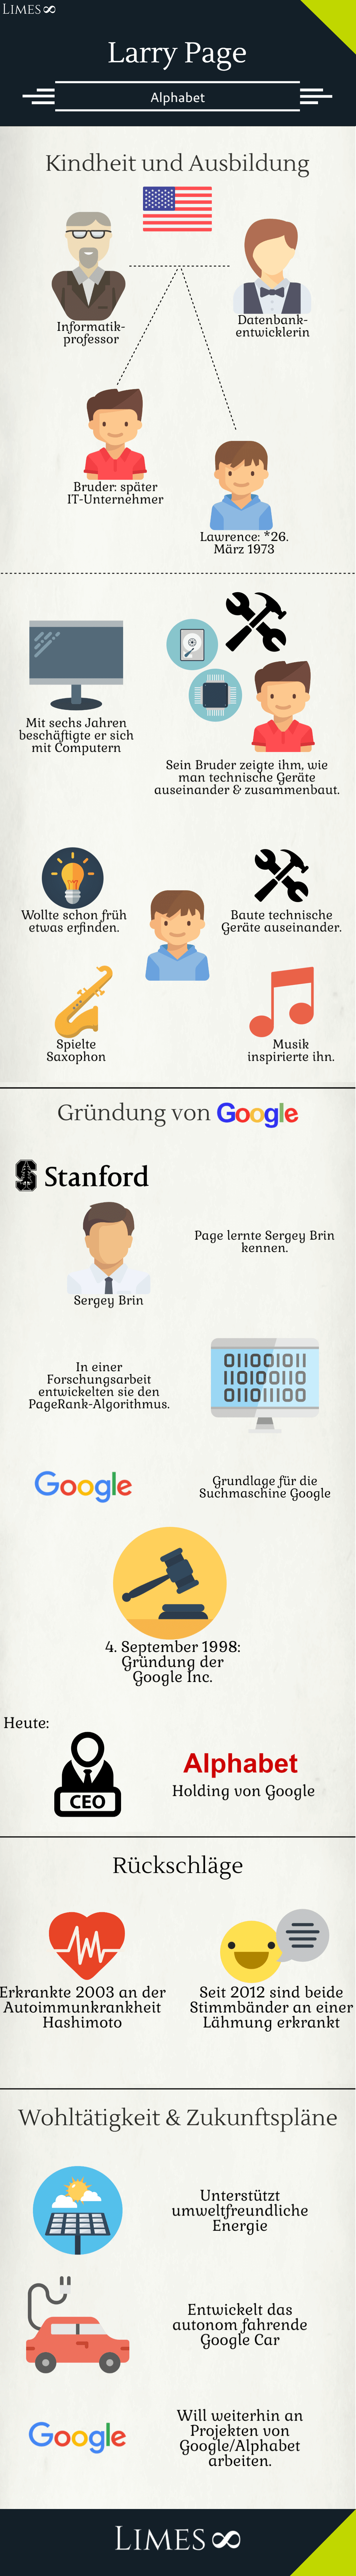 Infografik über Larry Page